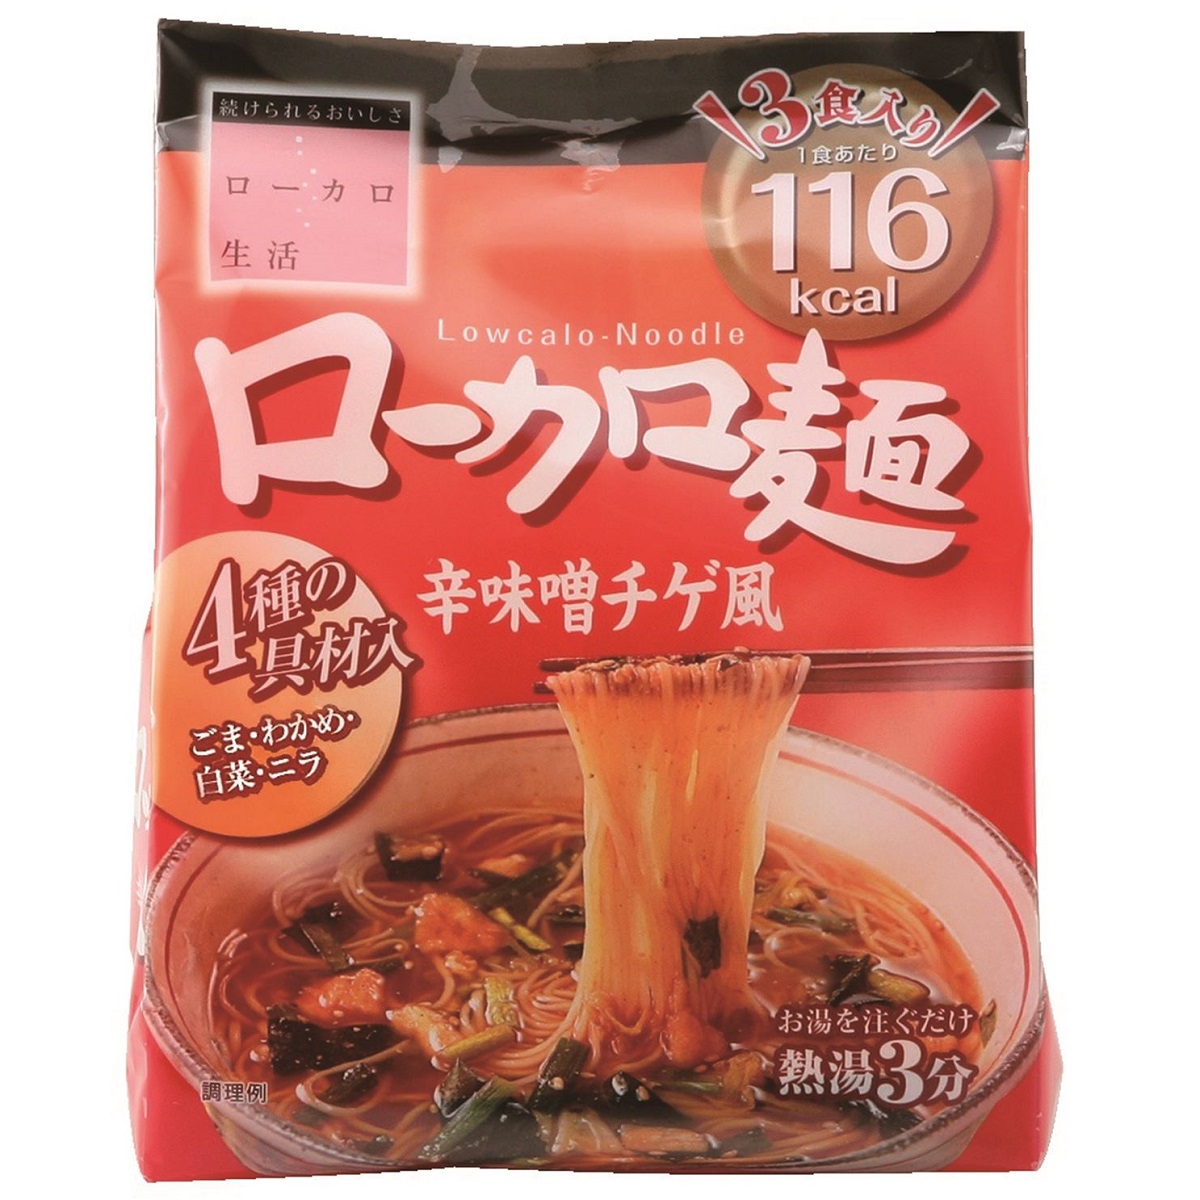 ローカロ麺5種30食セット